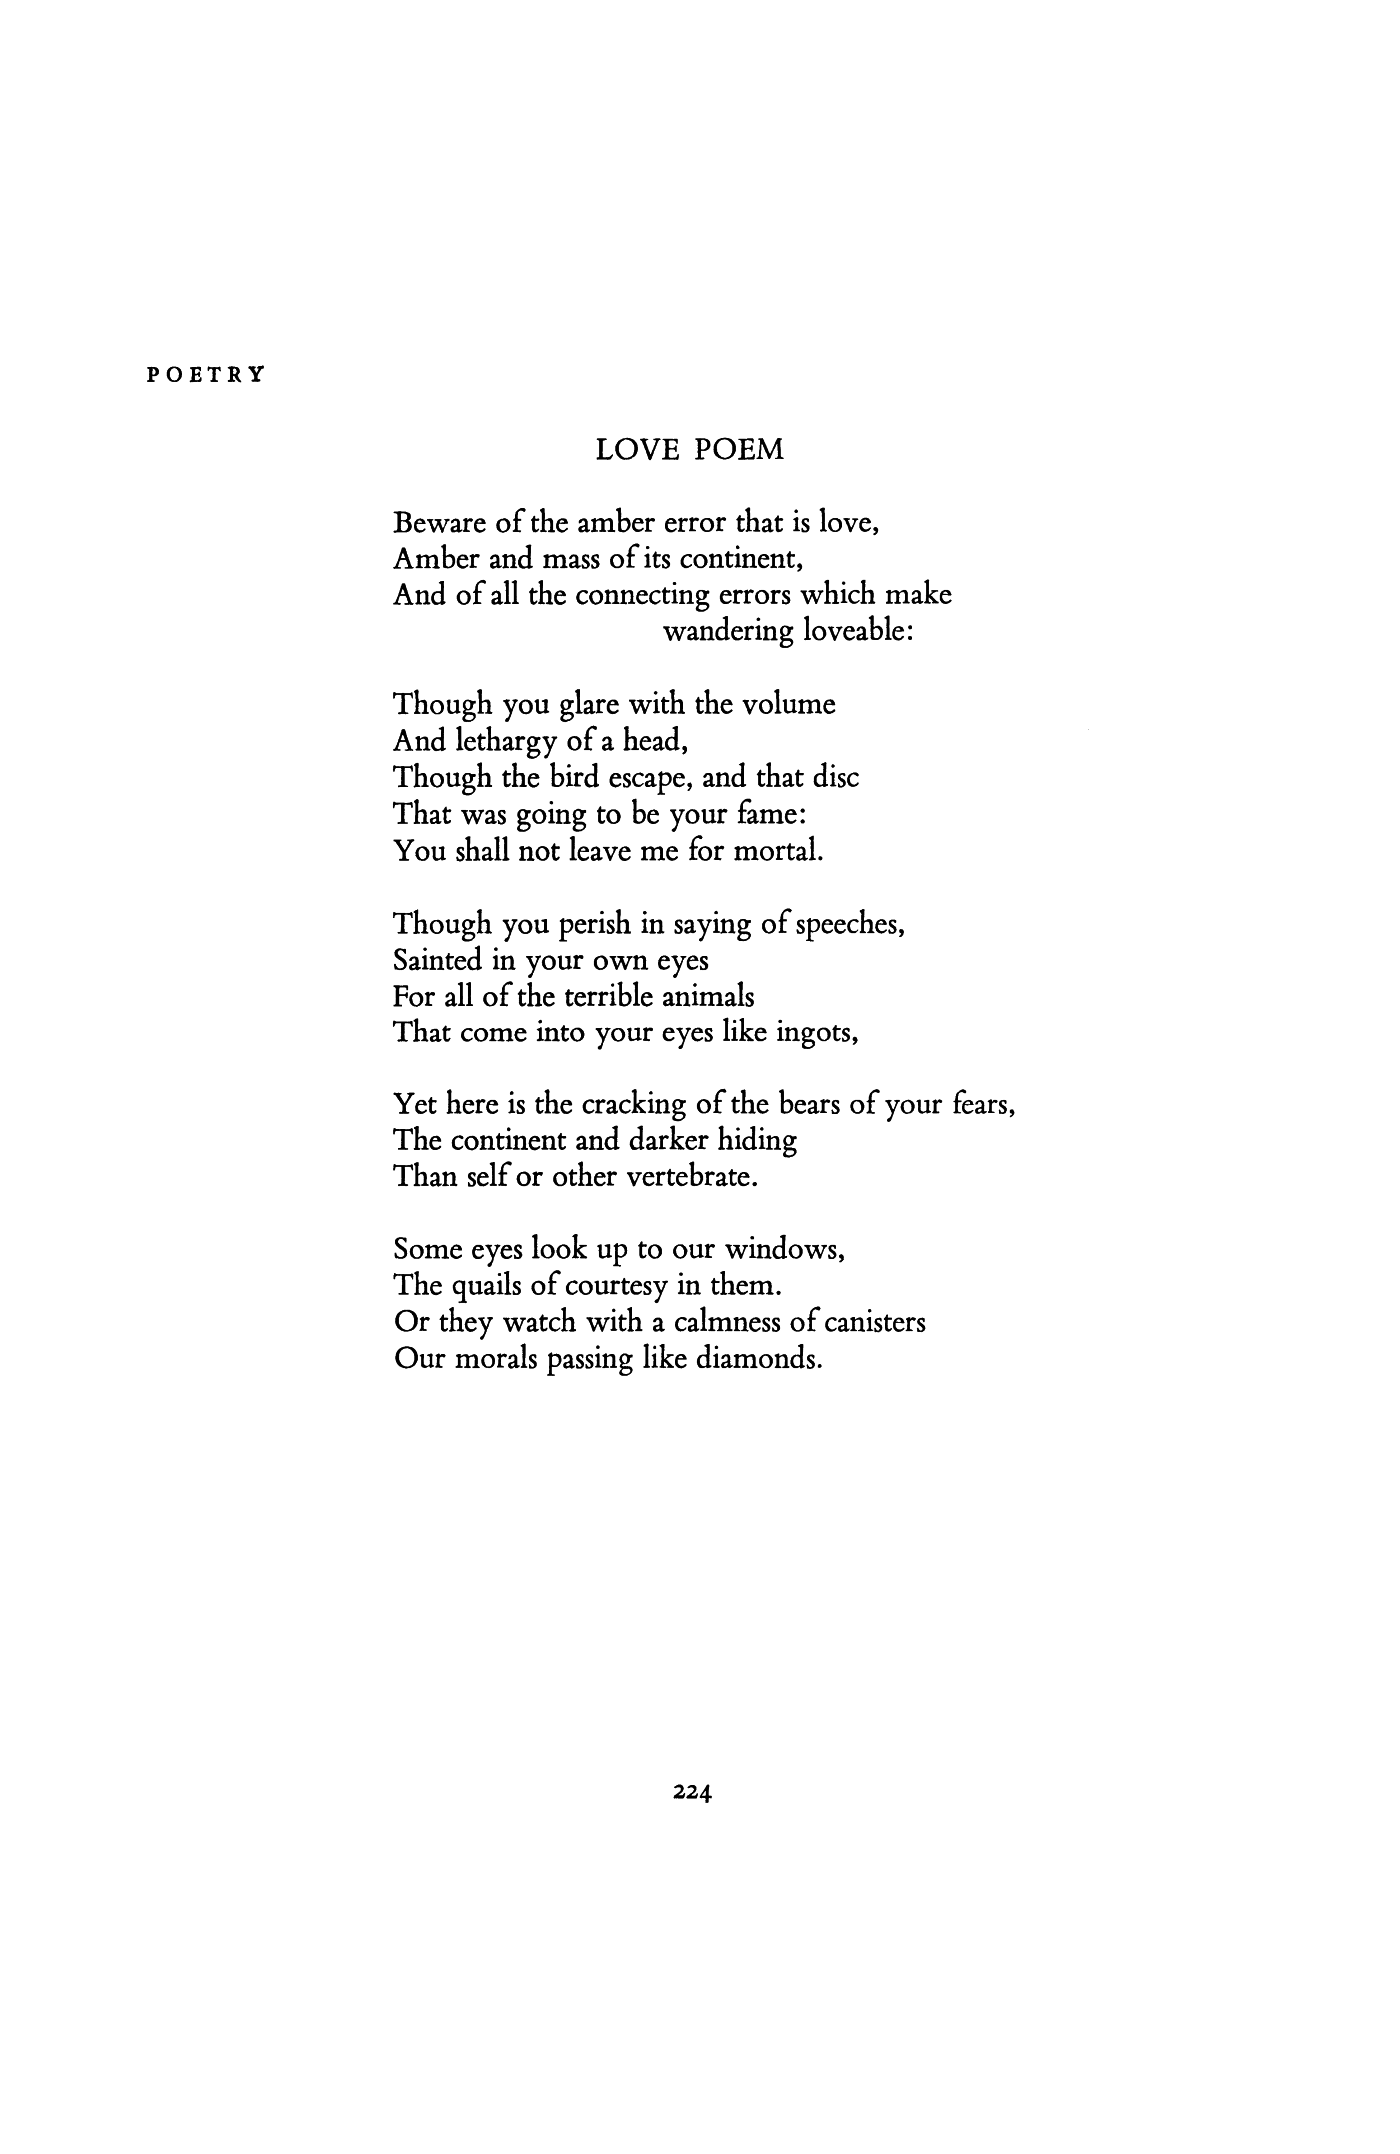 Love Poem by Rosalie Moore | Poetry 